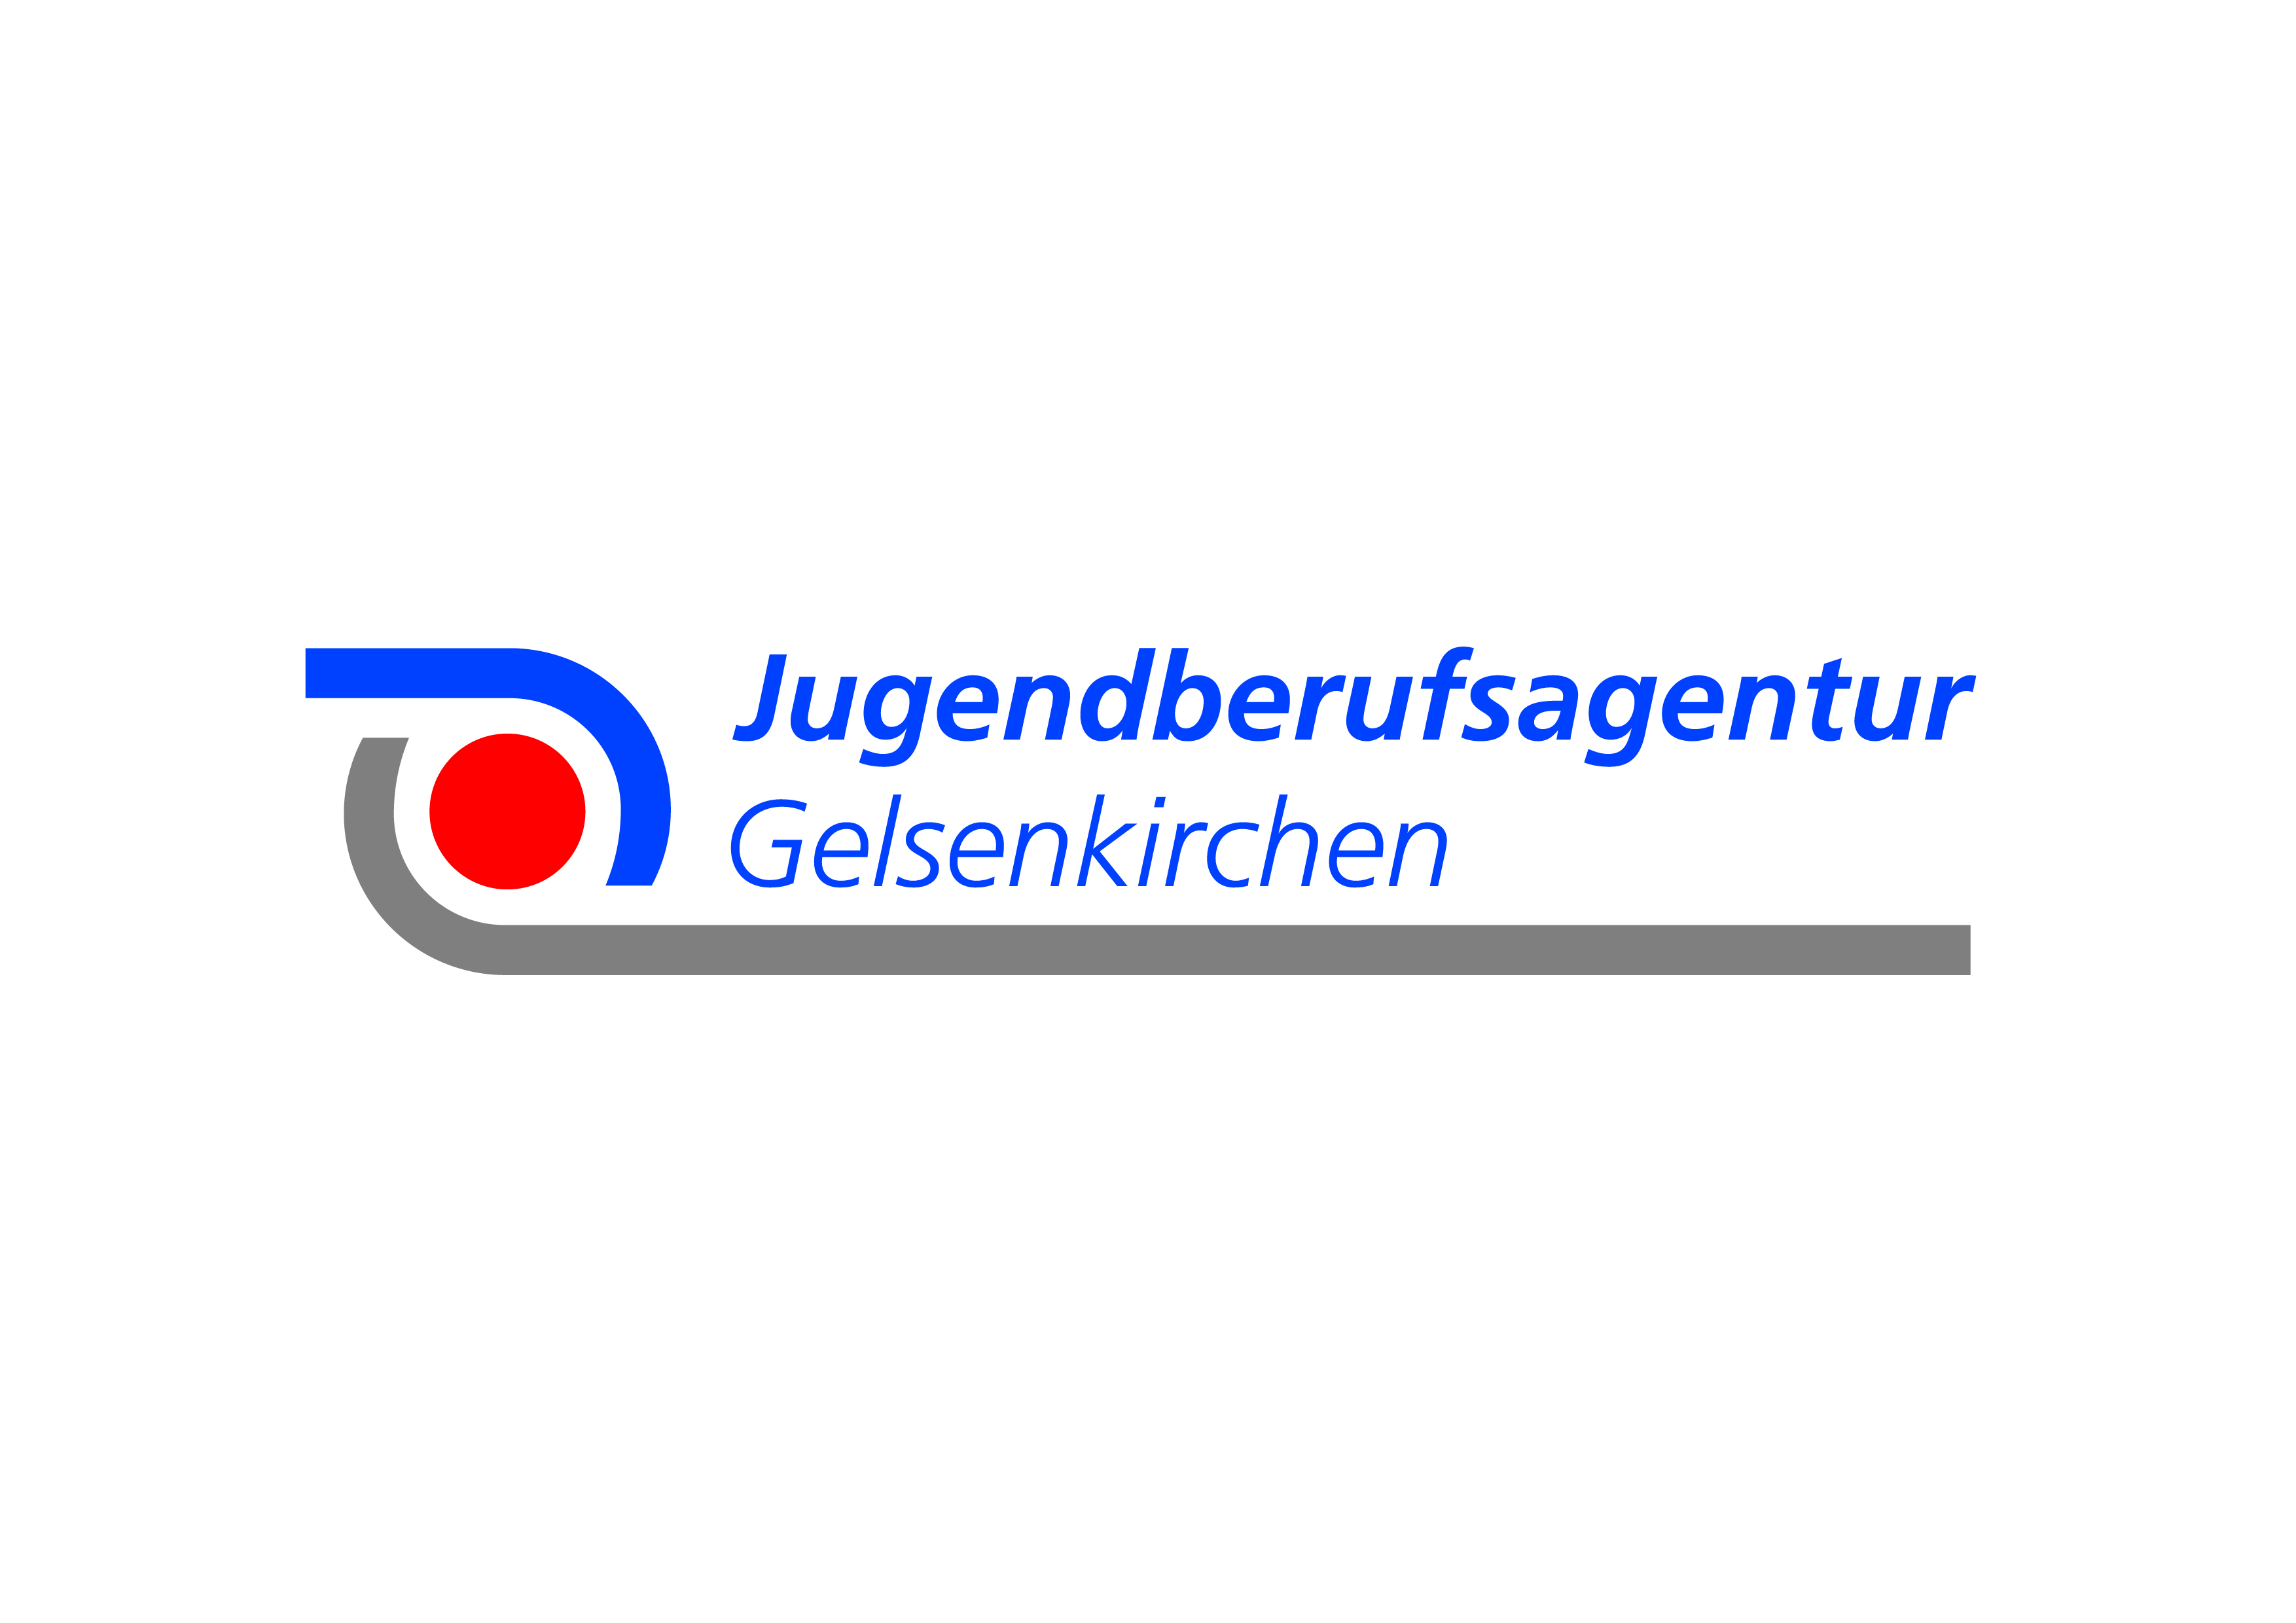 Logo Jugendberufsagentur